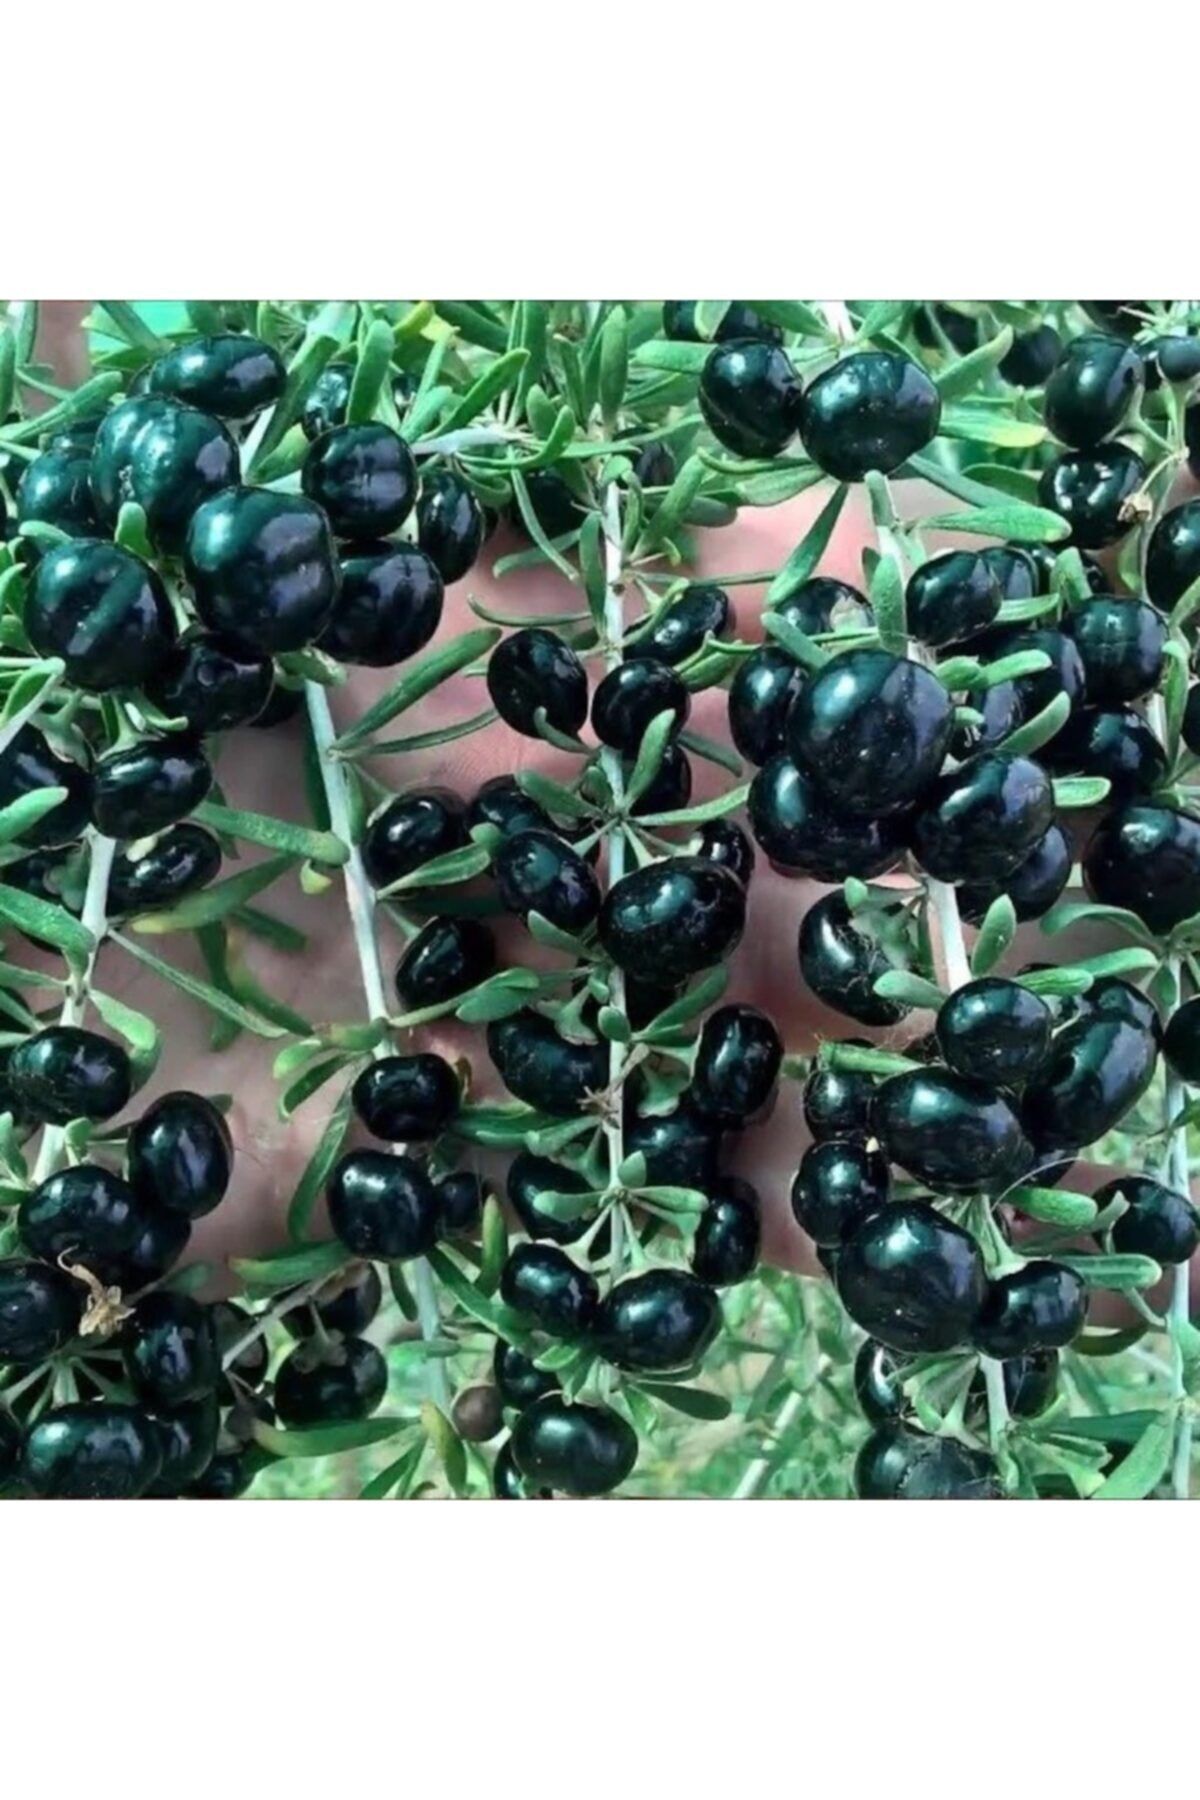 mutbirlik Tüplü Nadir Çeşit Siyah Goji Berry Kurt Üzümü